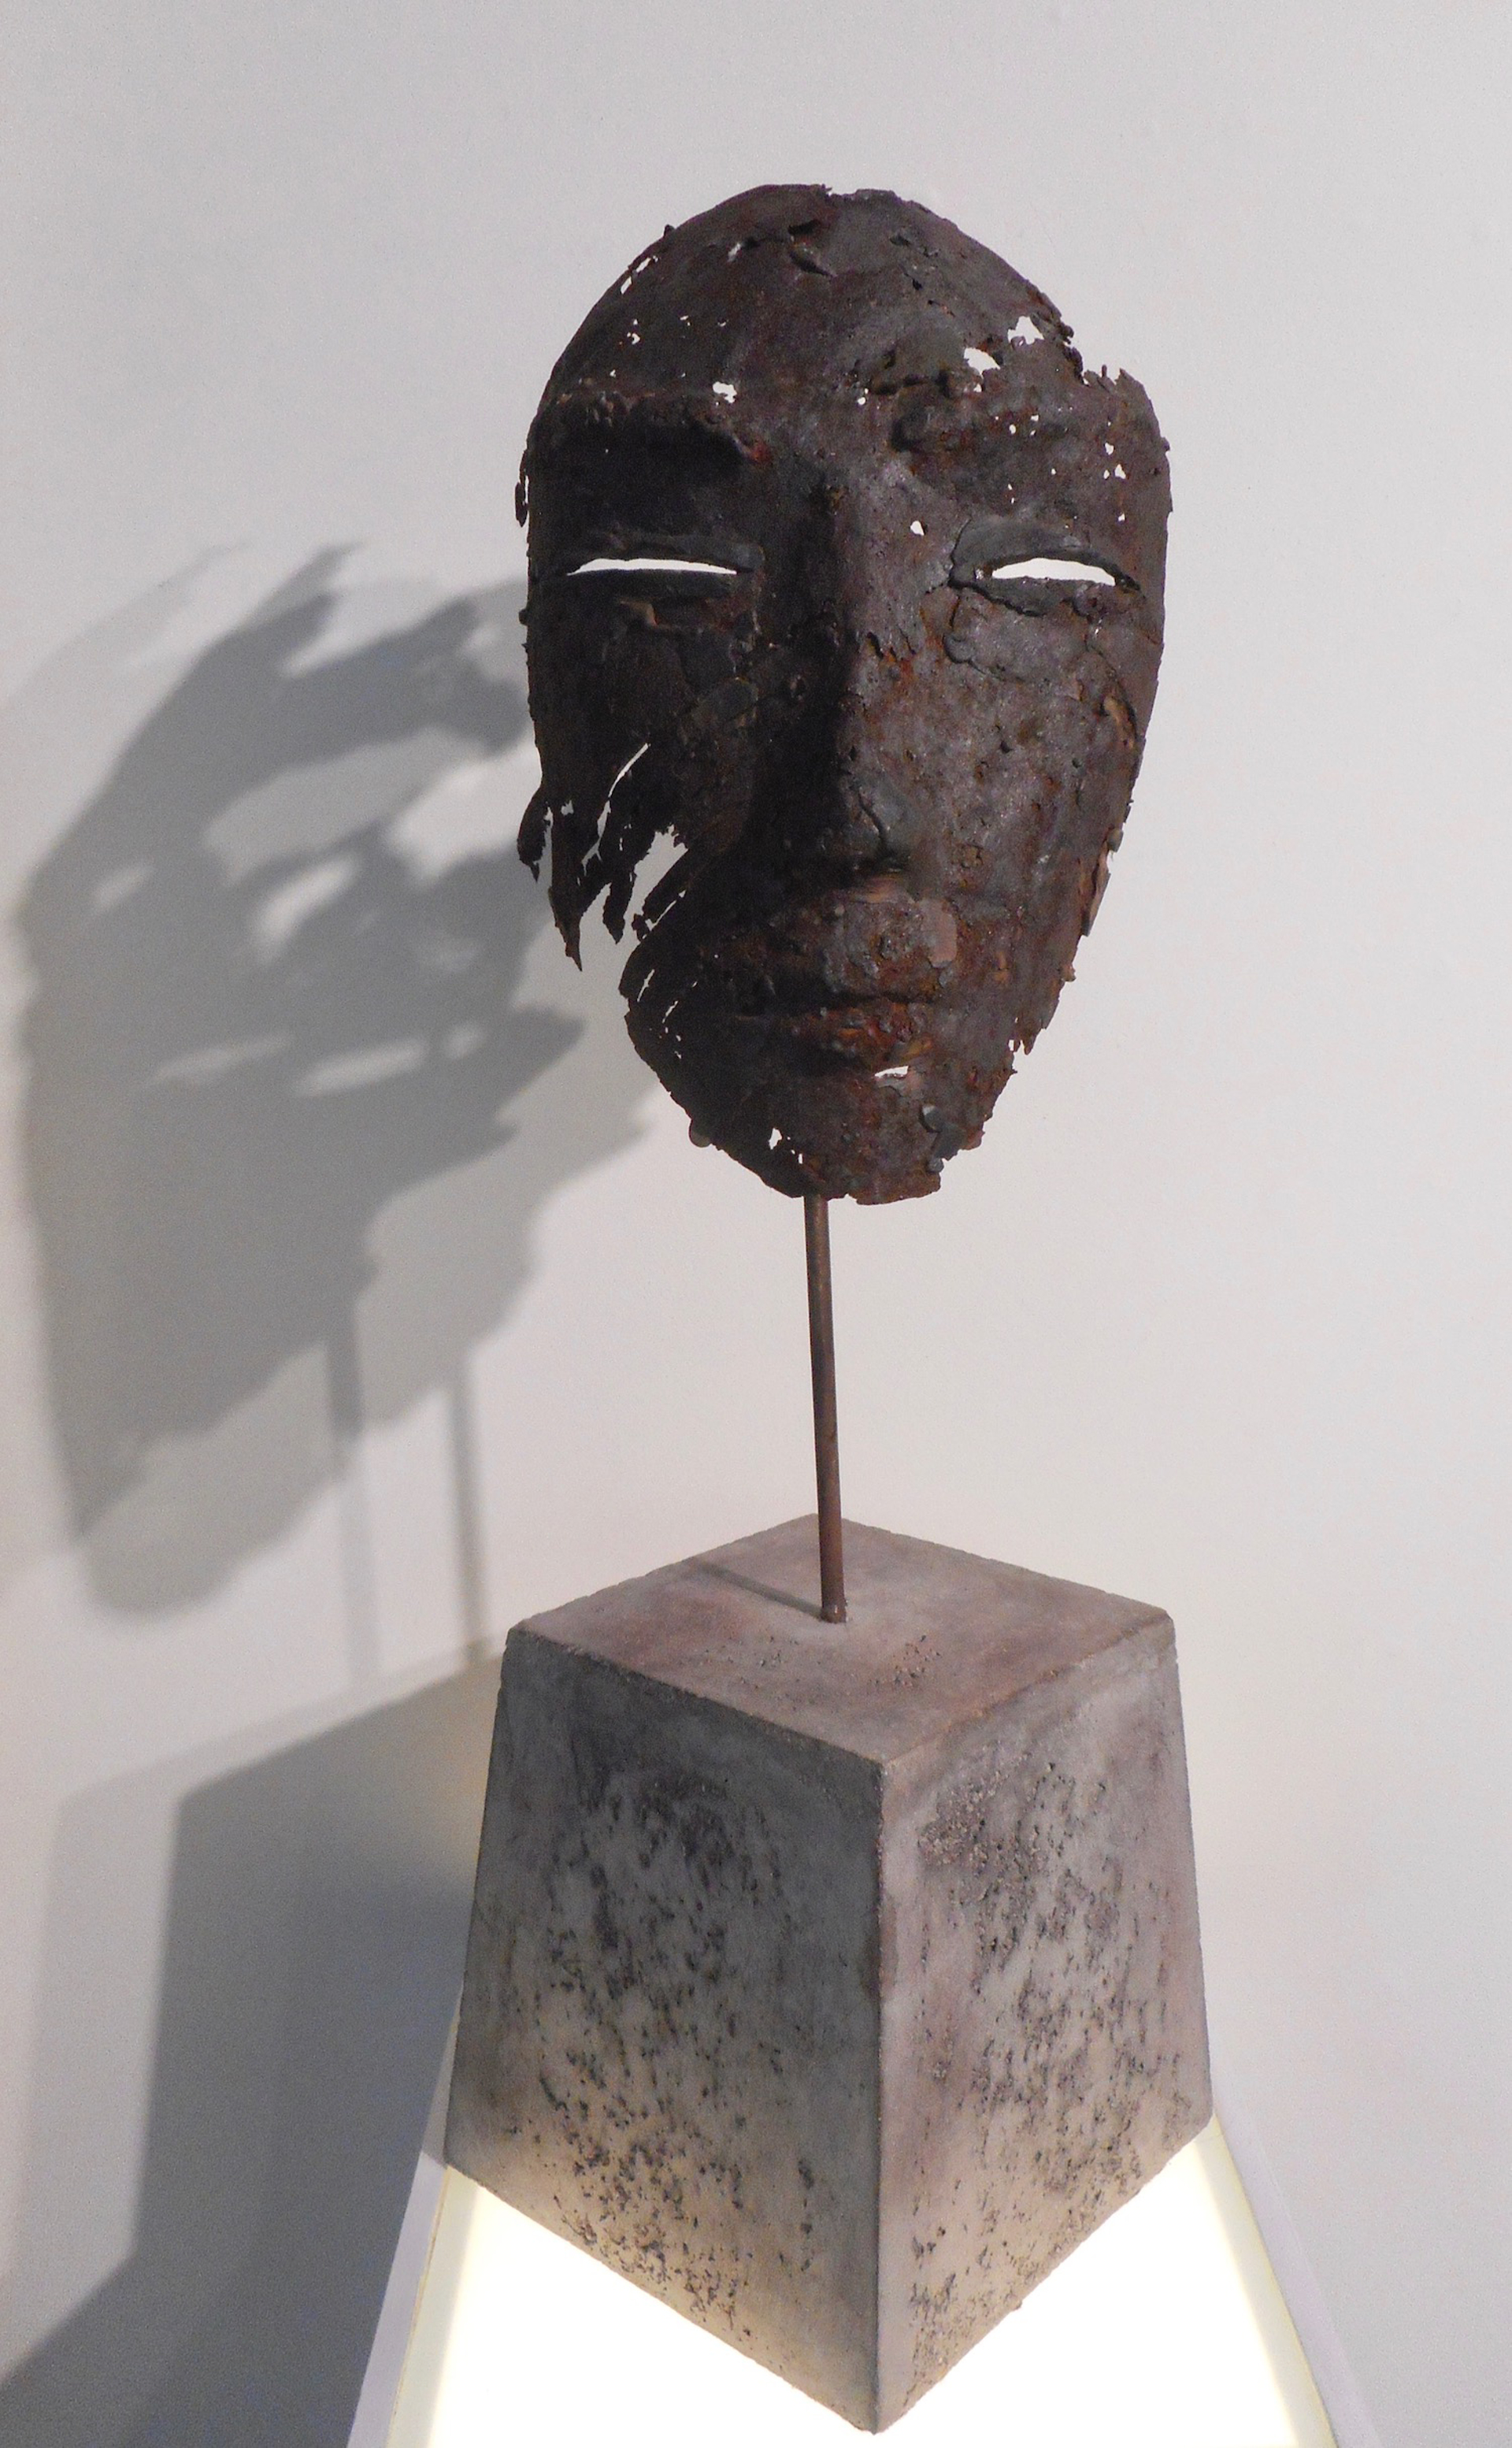 Mask III by Anton Smit